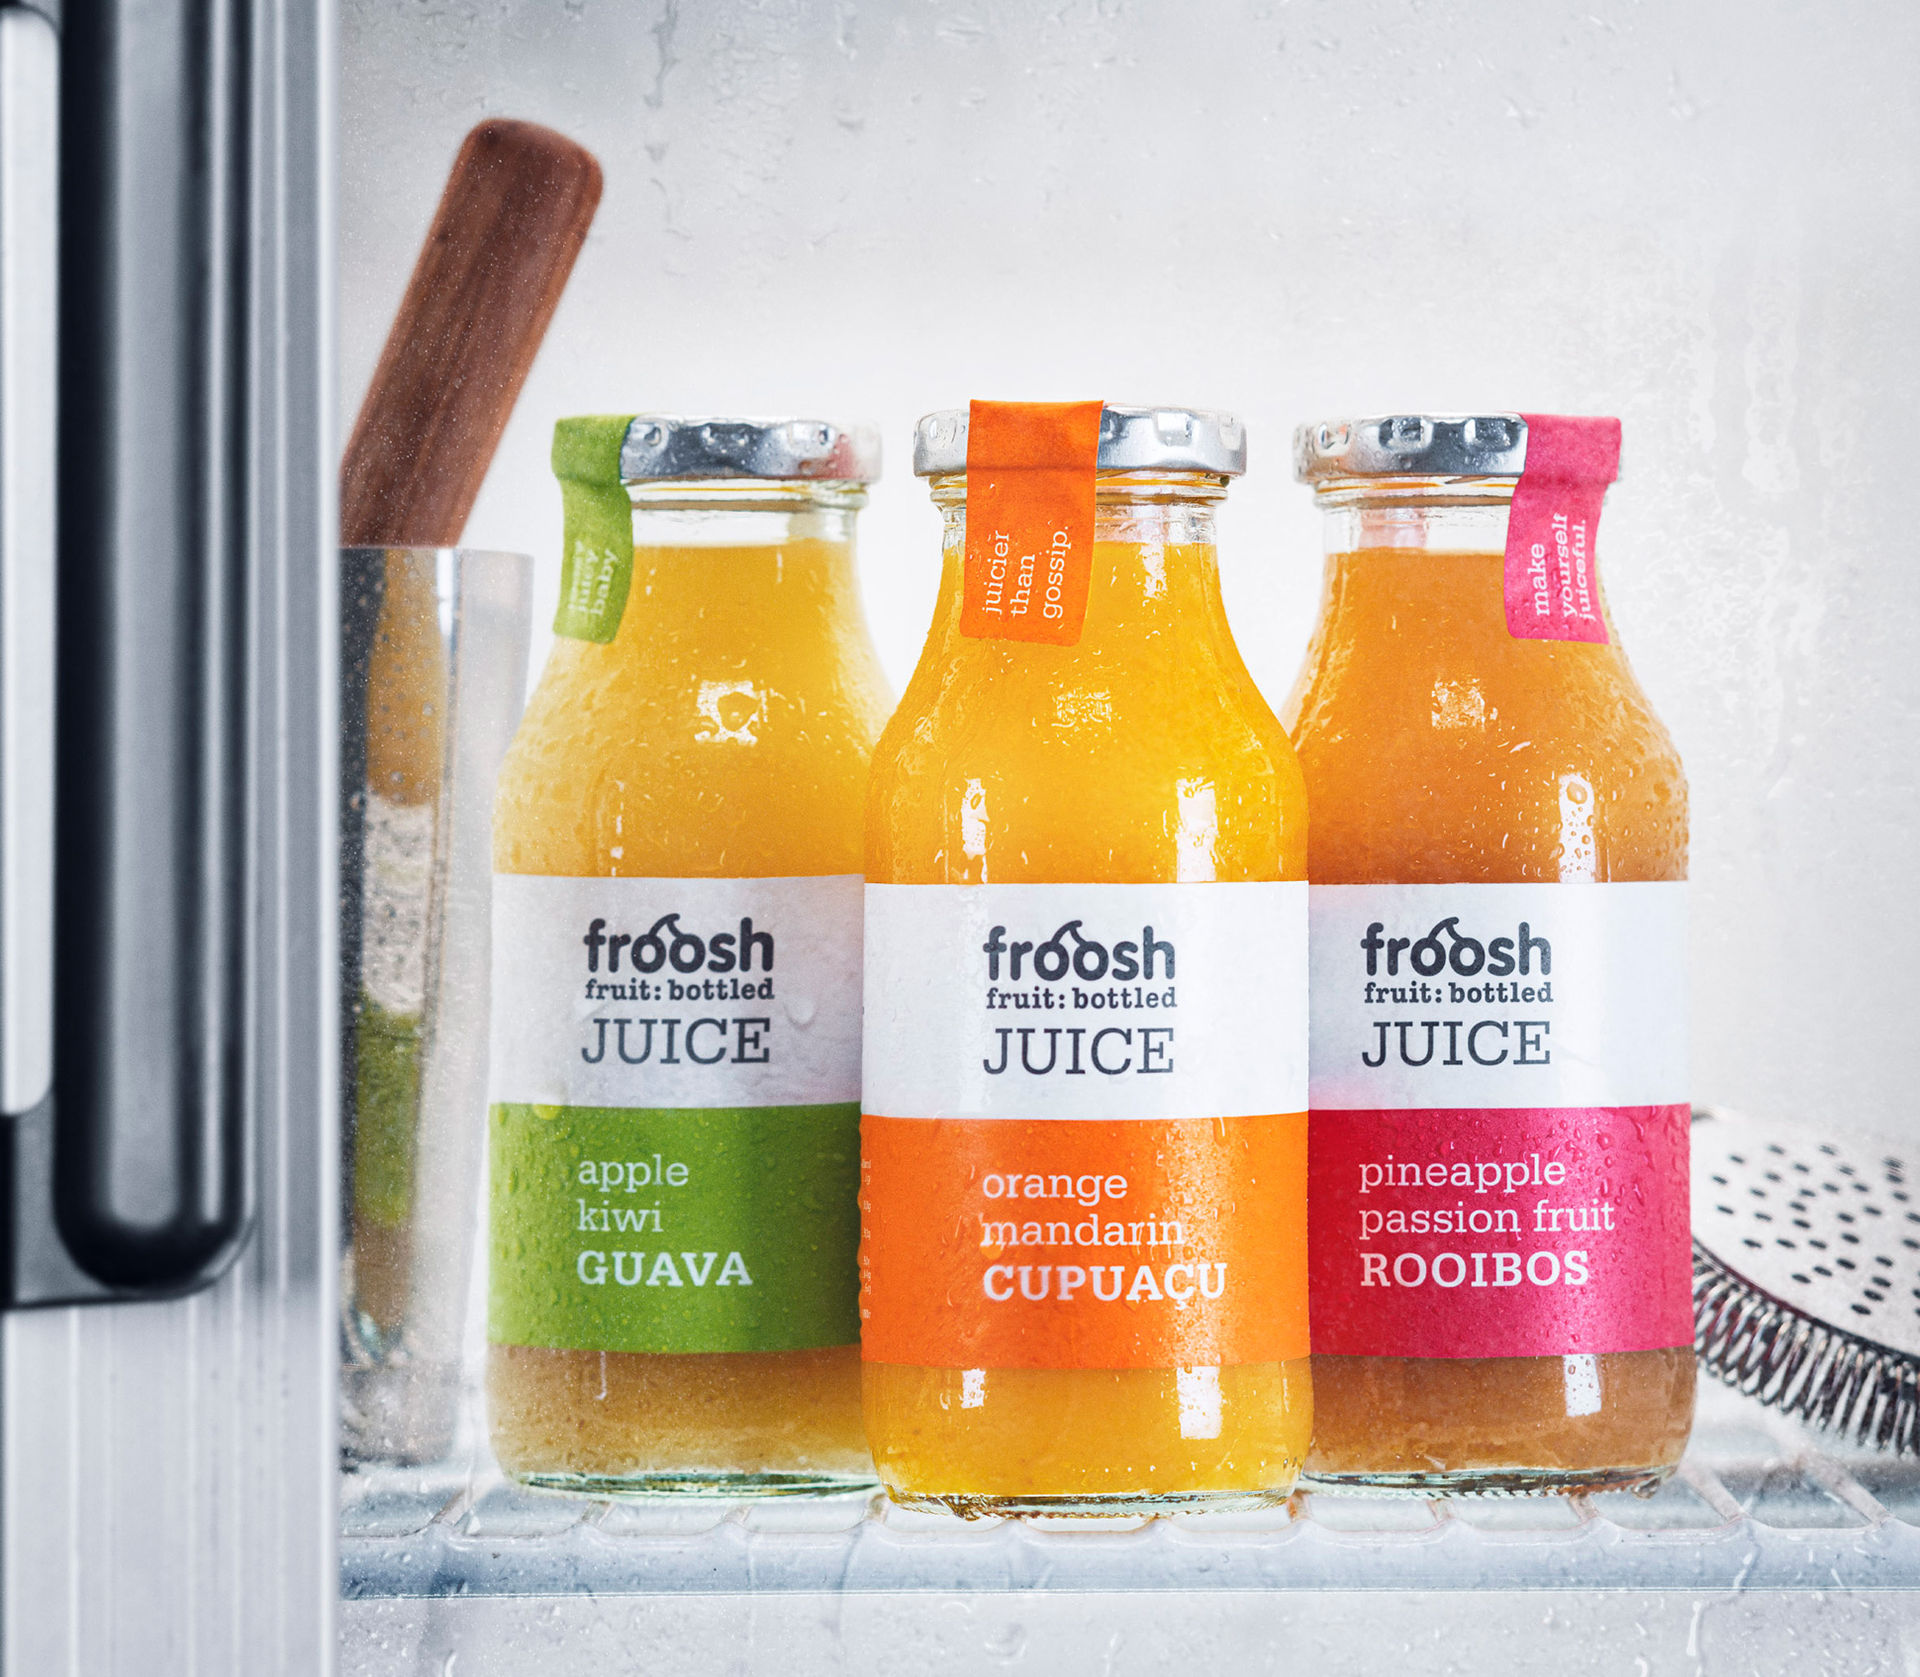 Froosh lanserar nya juicer